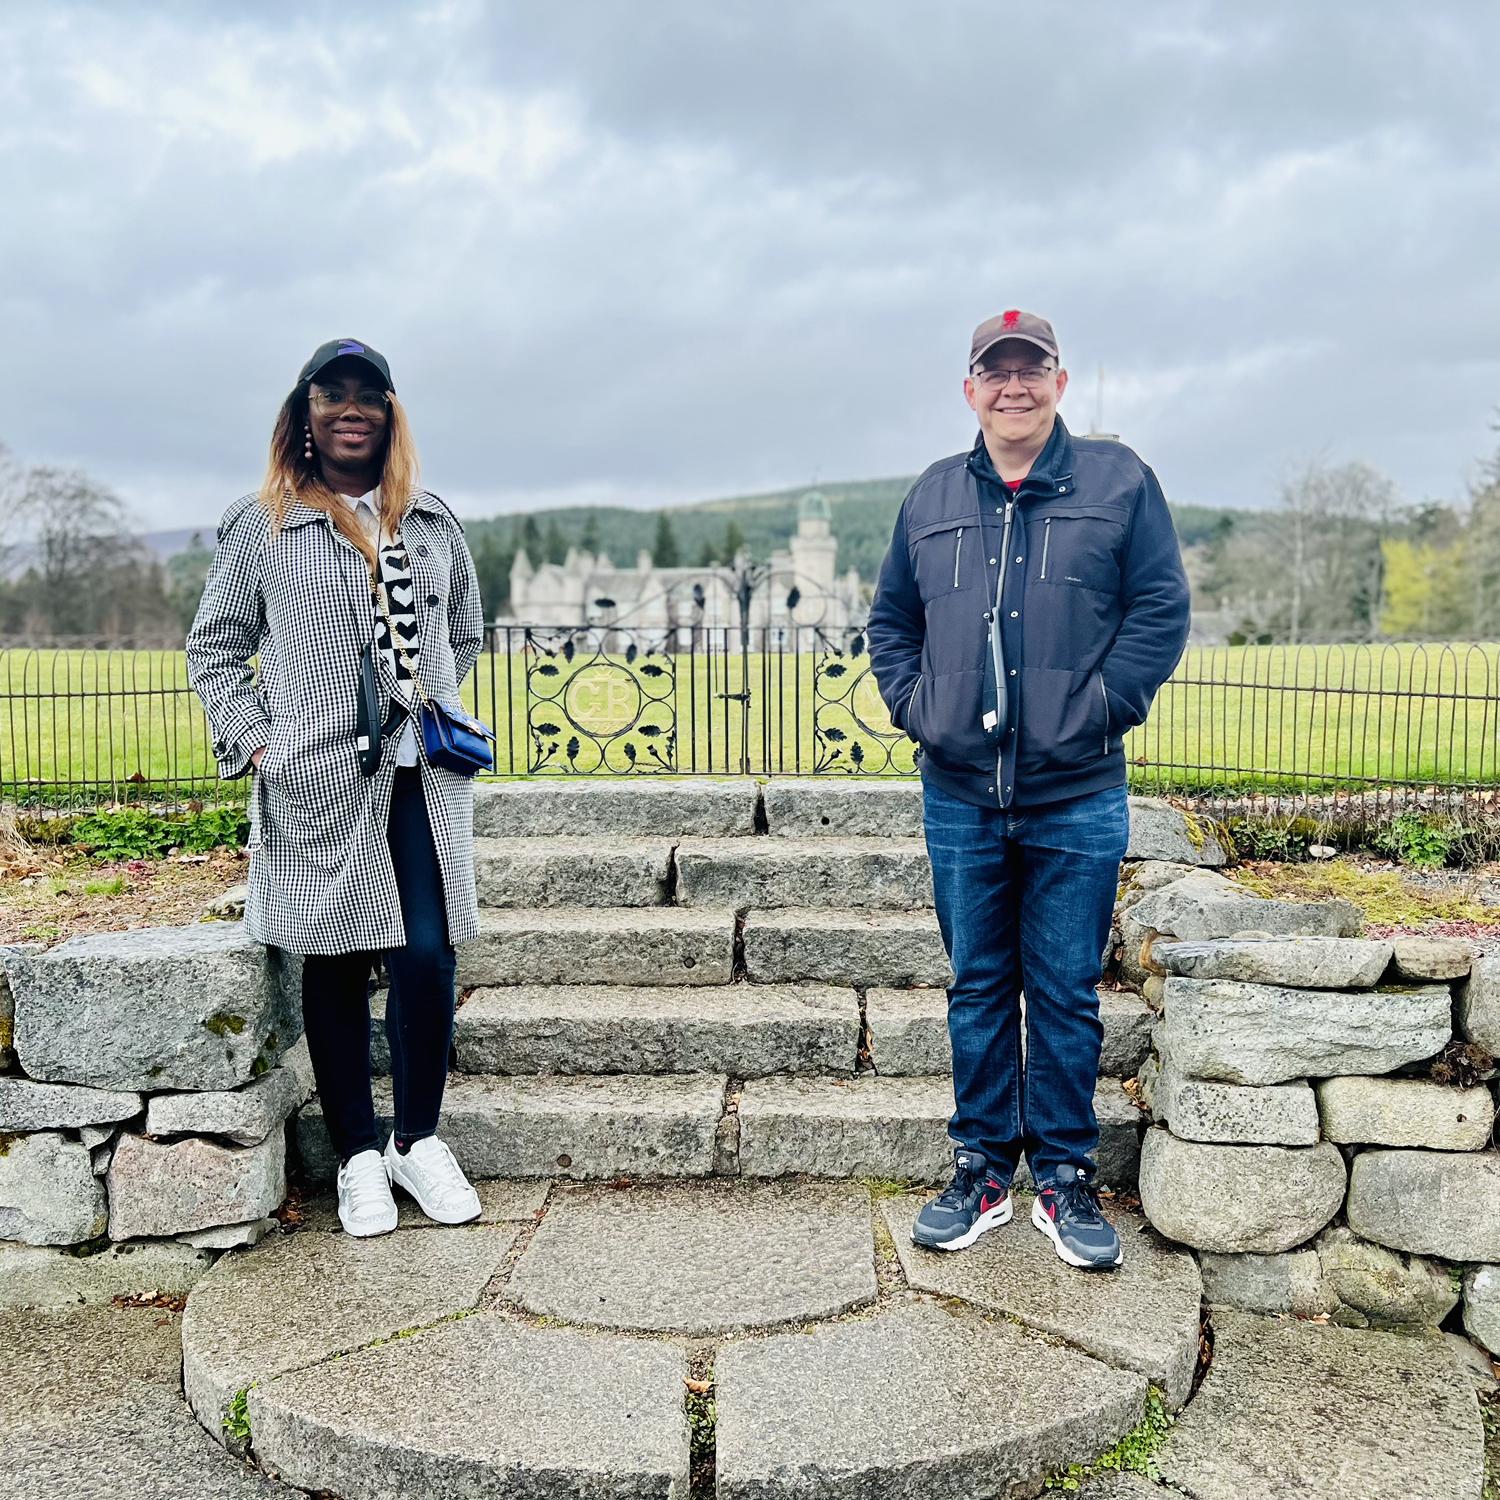 We visited Balmoral Castle Scotland April 2022